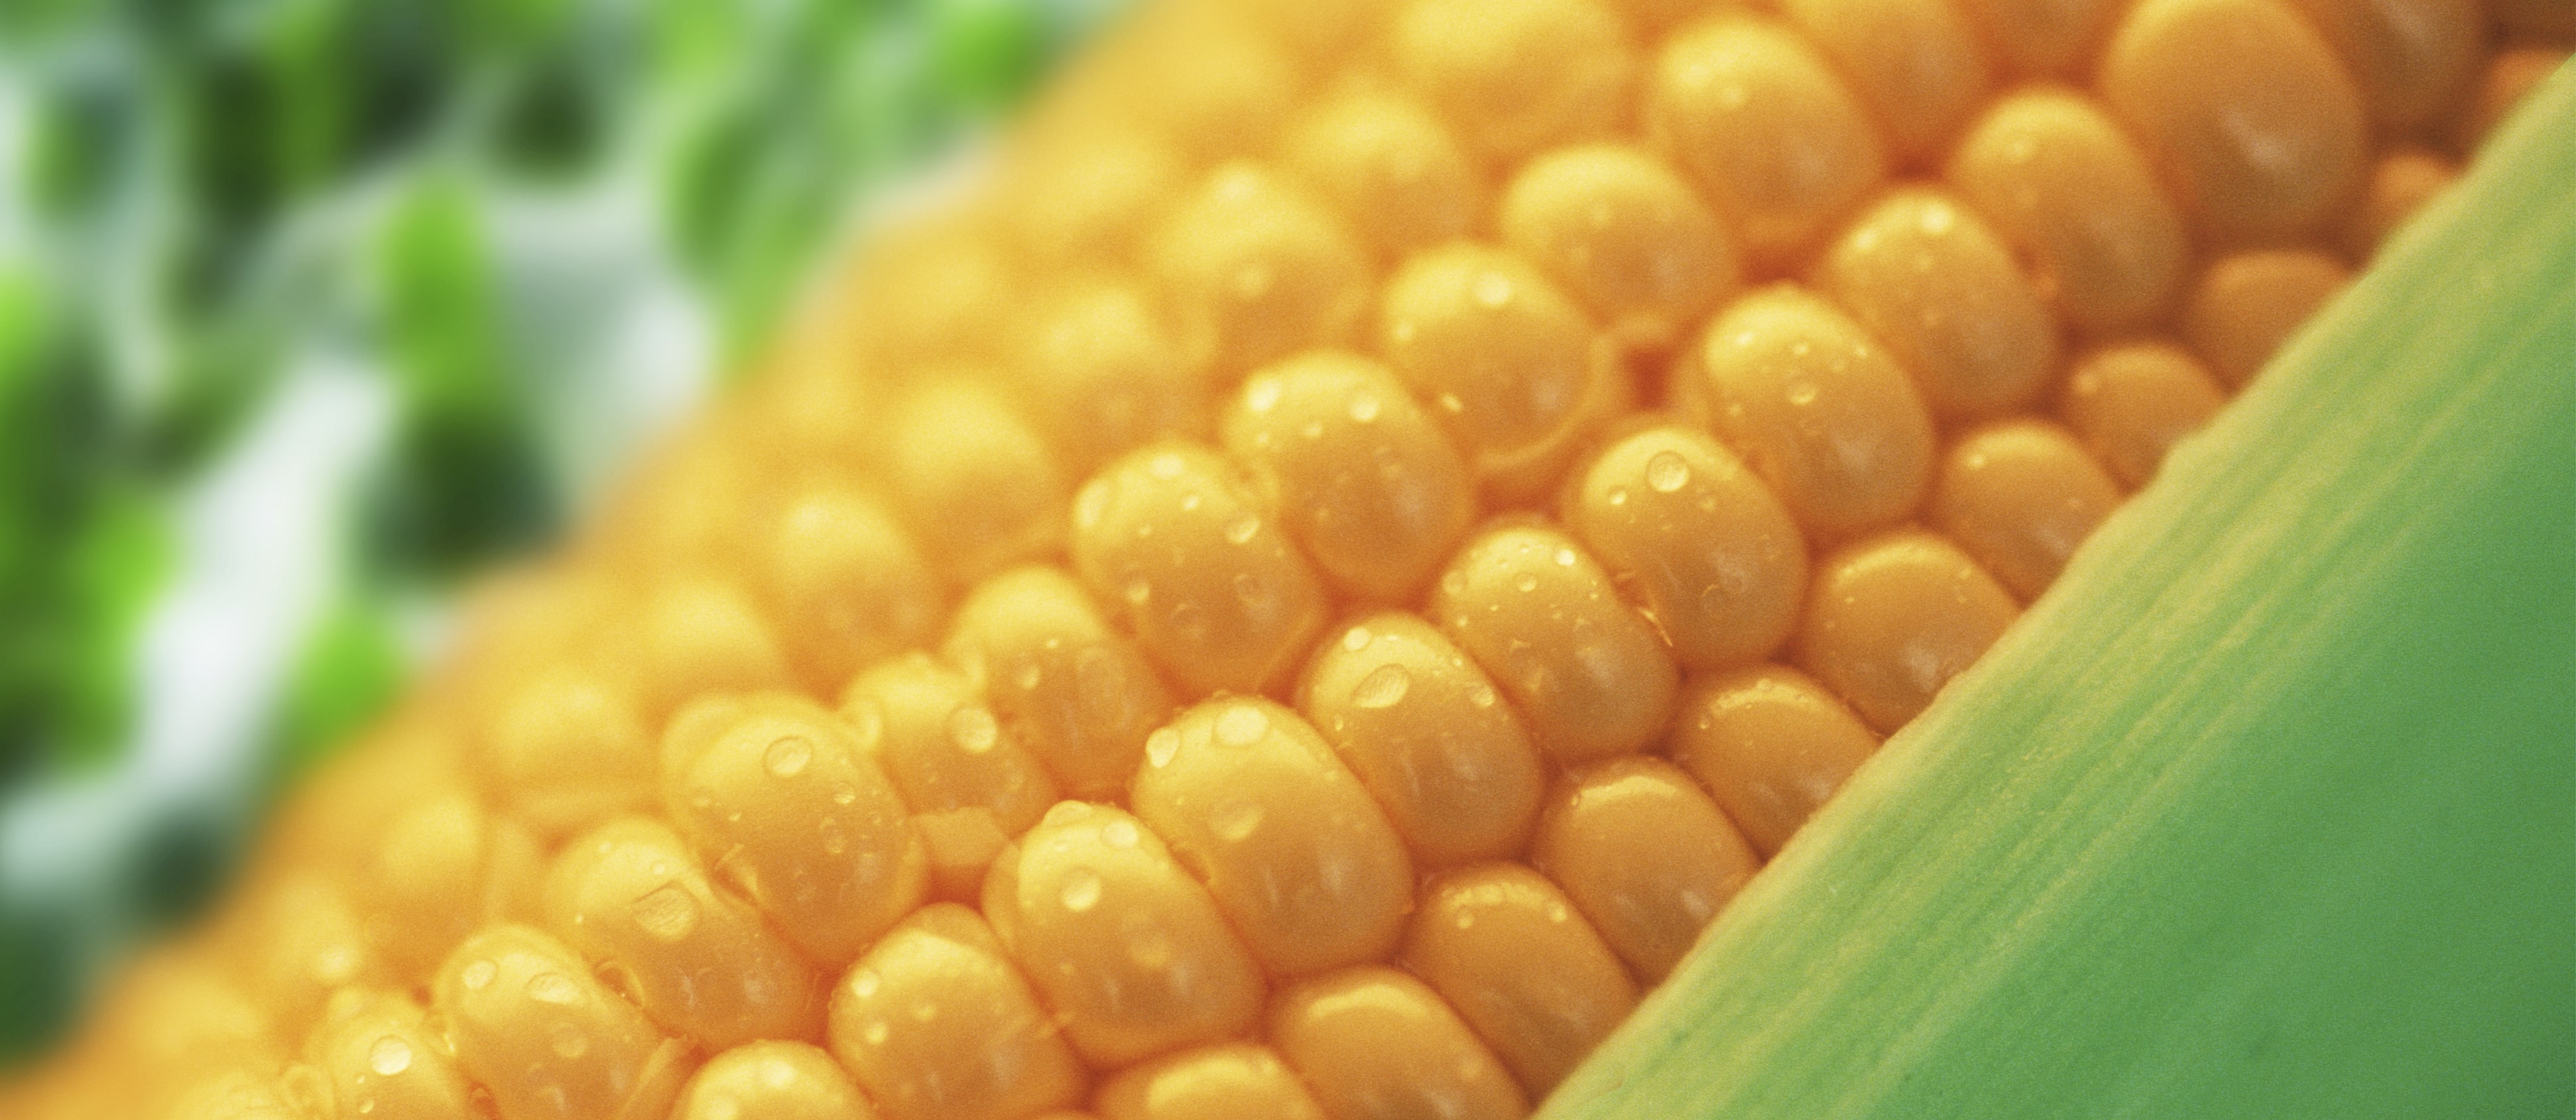 Cómo aumentar el rendimiento del maíz